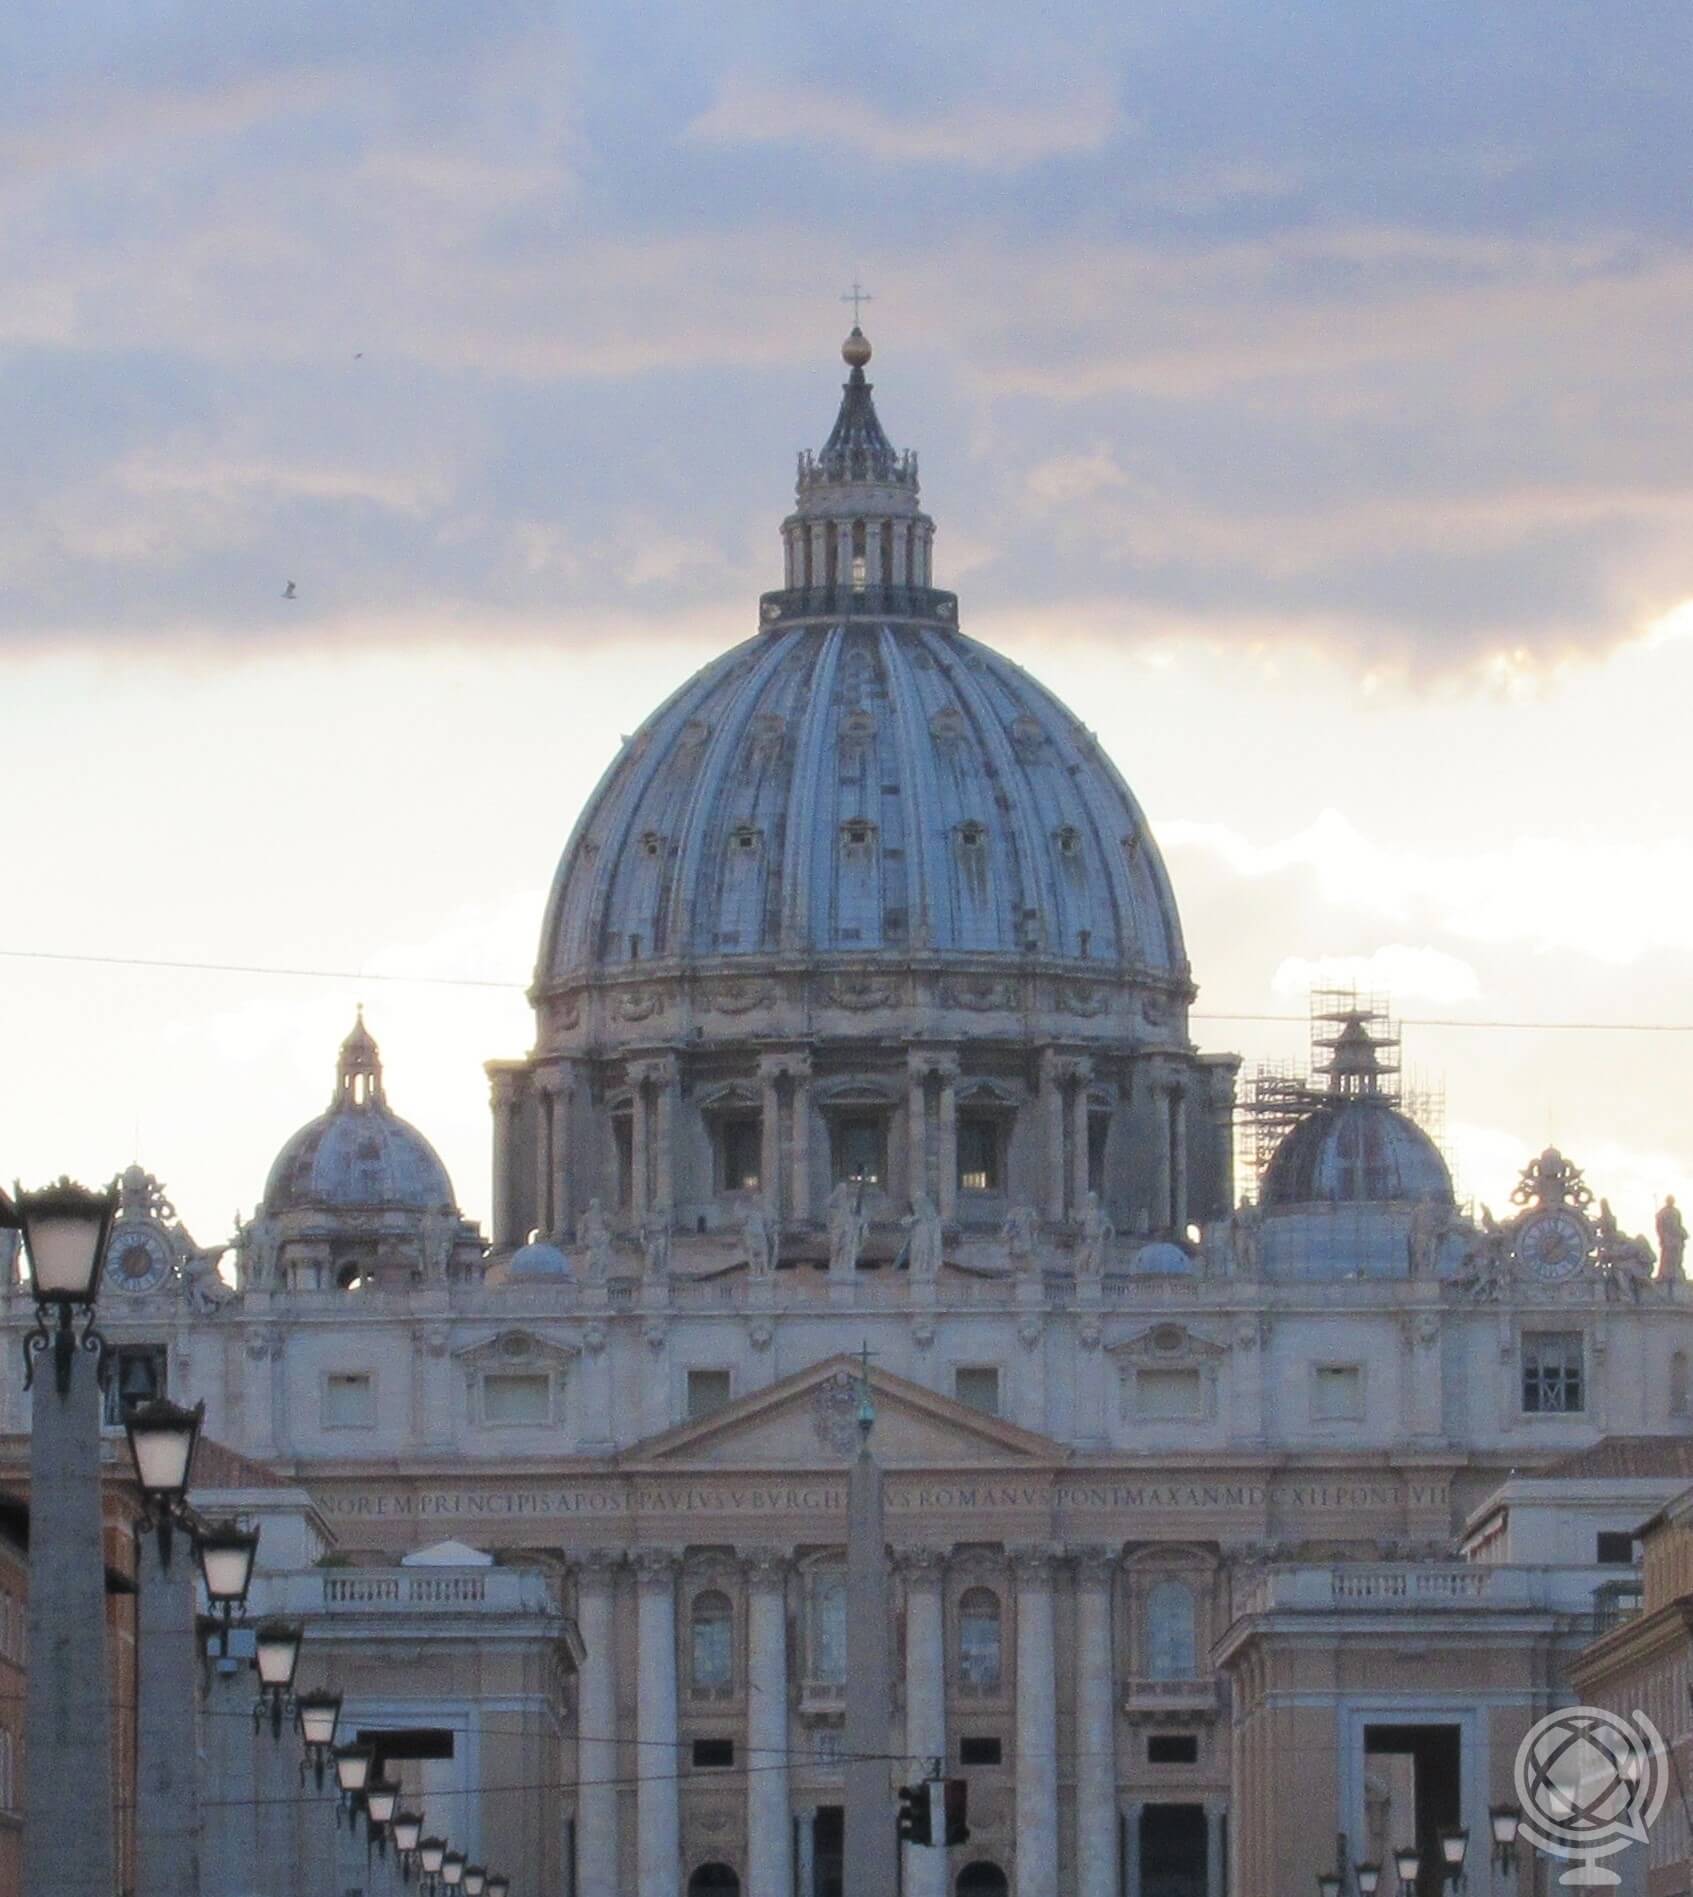 O que fazer no Vaticano - Pontos turísticos - Cúpula da Basílica de São Pedro no Vaticano